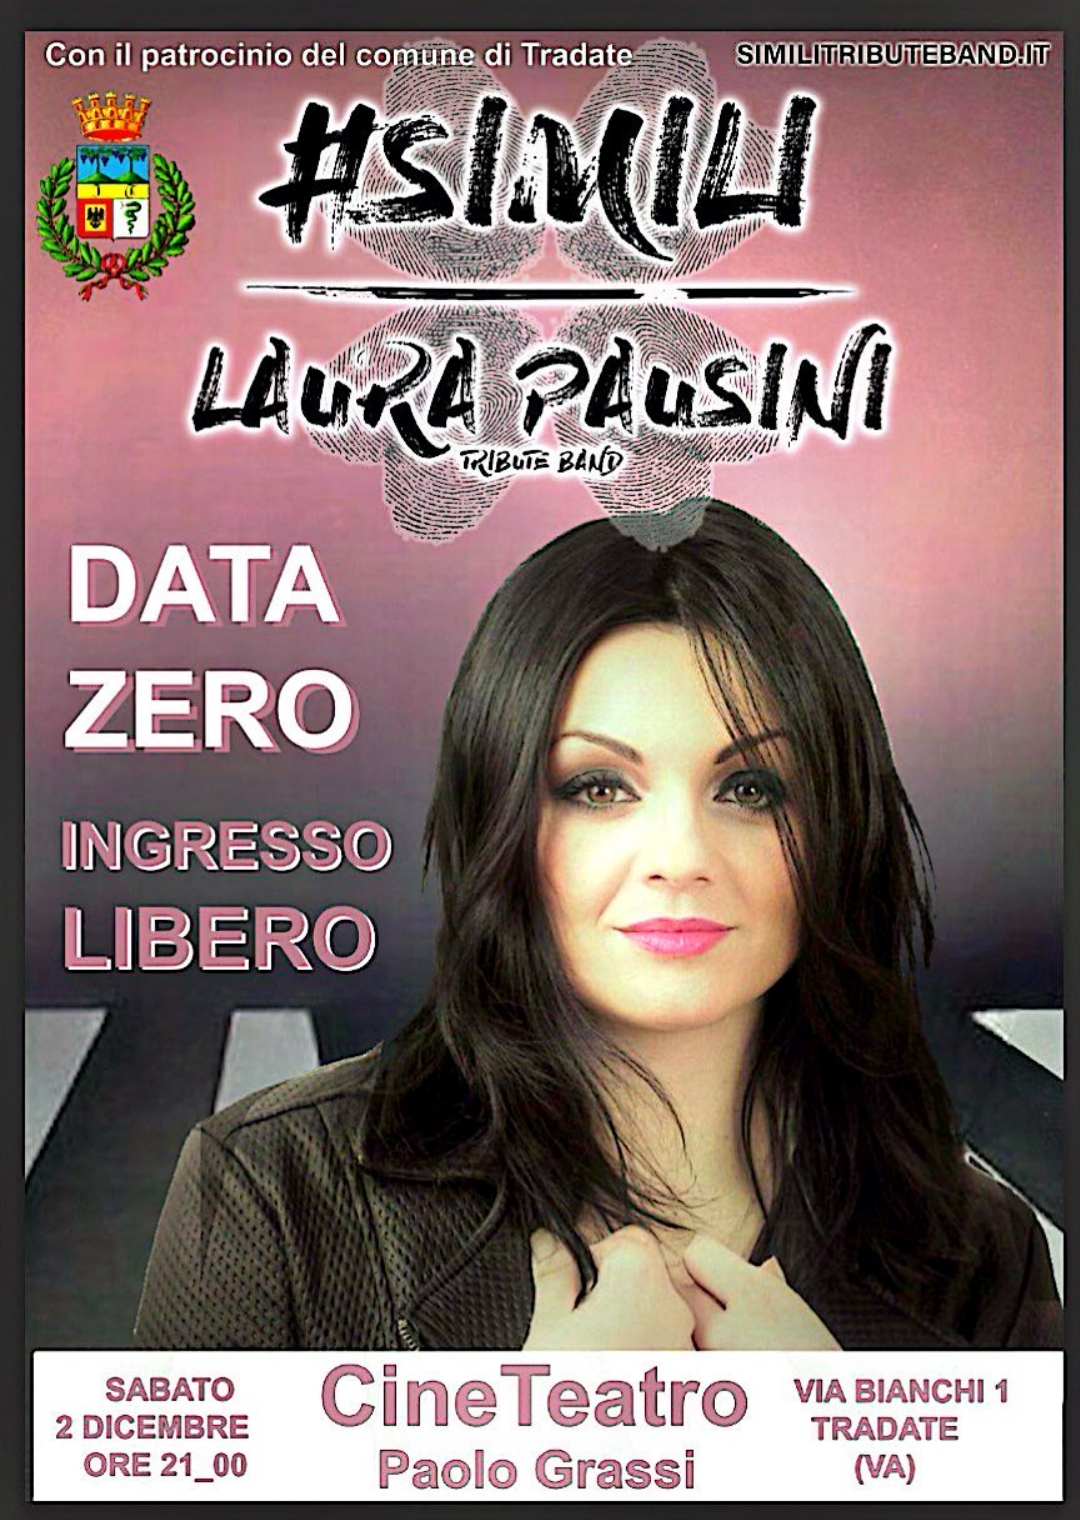 Laura Pausini Tribute band